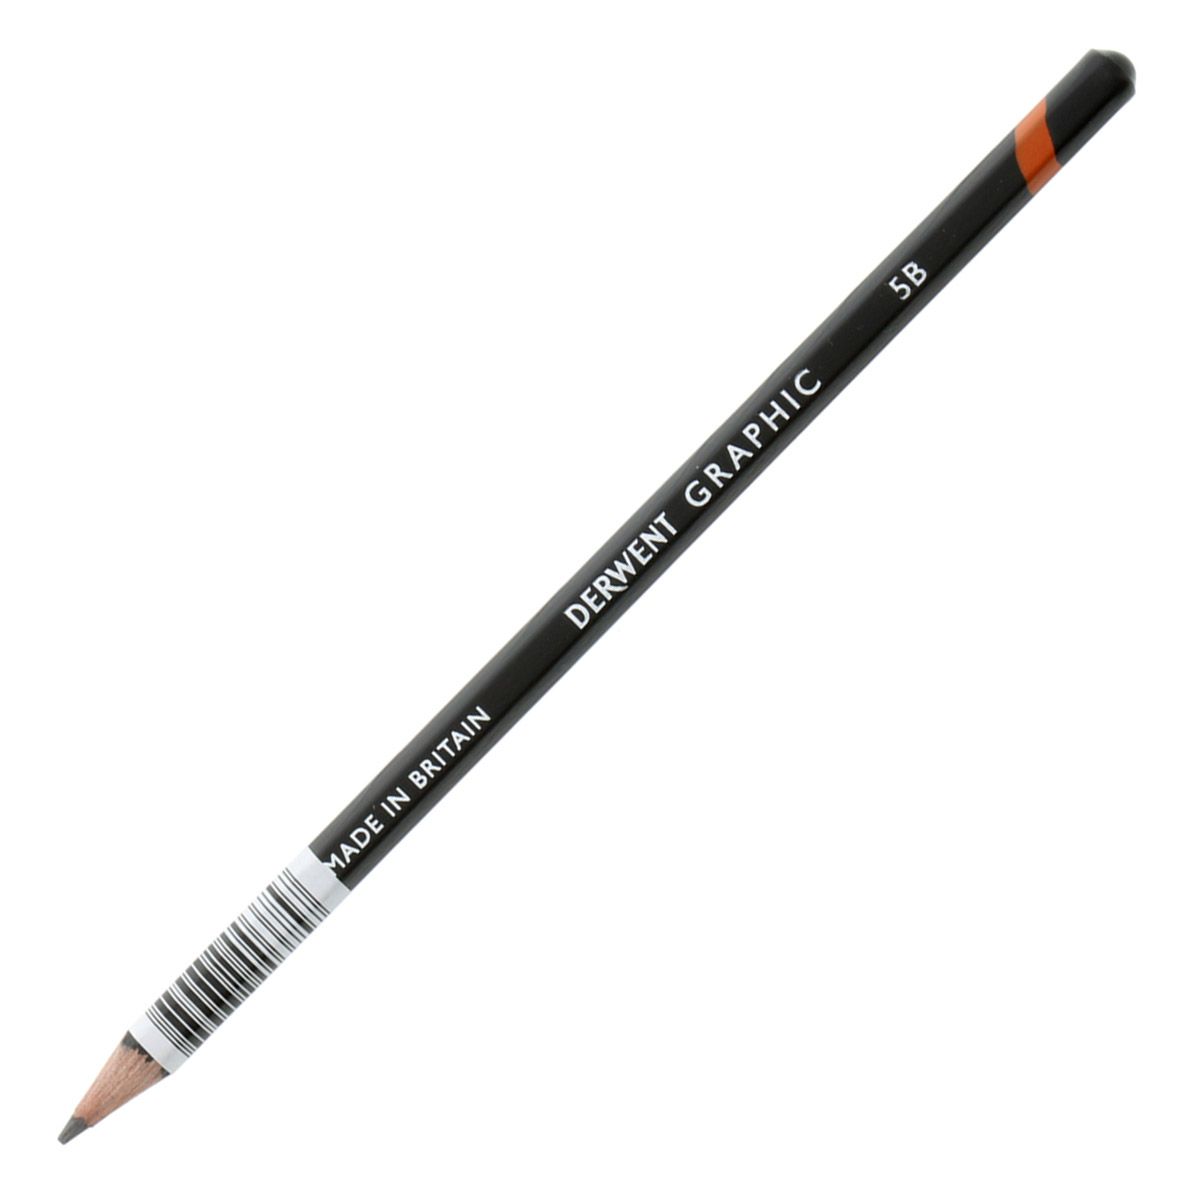 Derwent Graphic Pencil - 5B